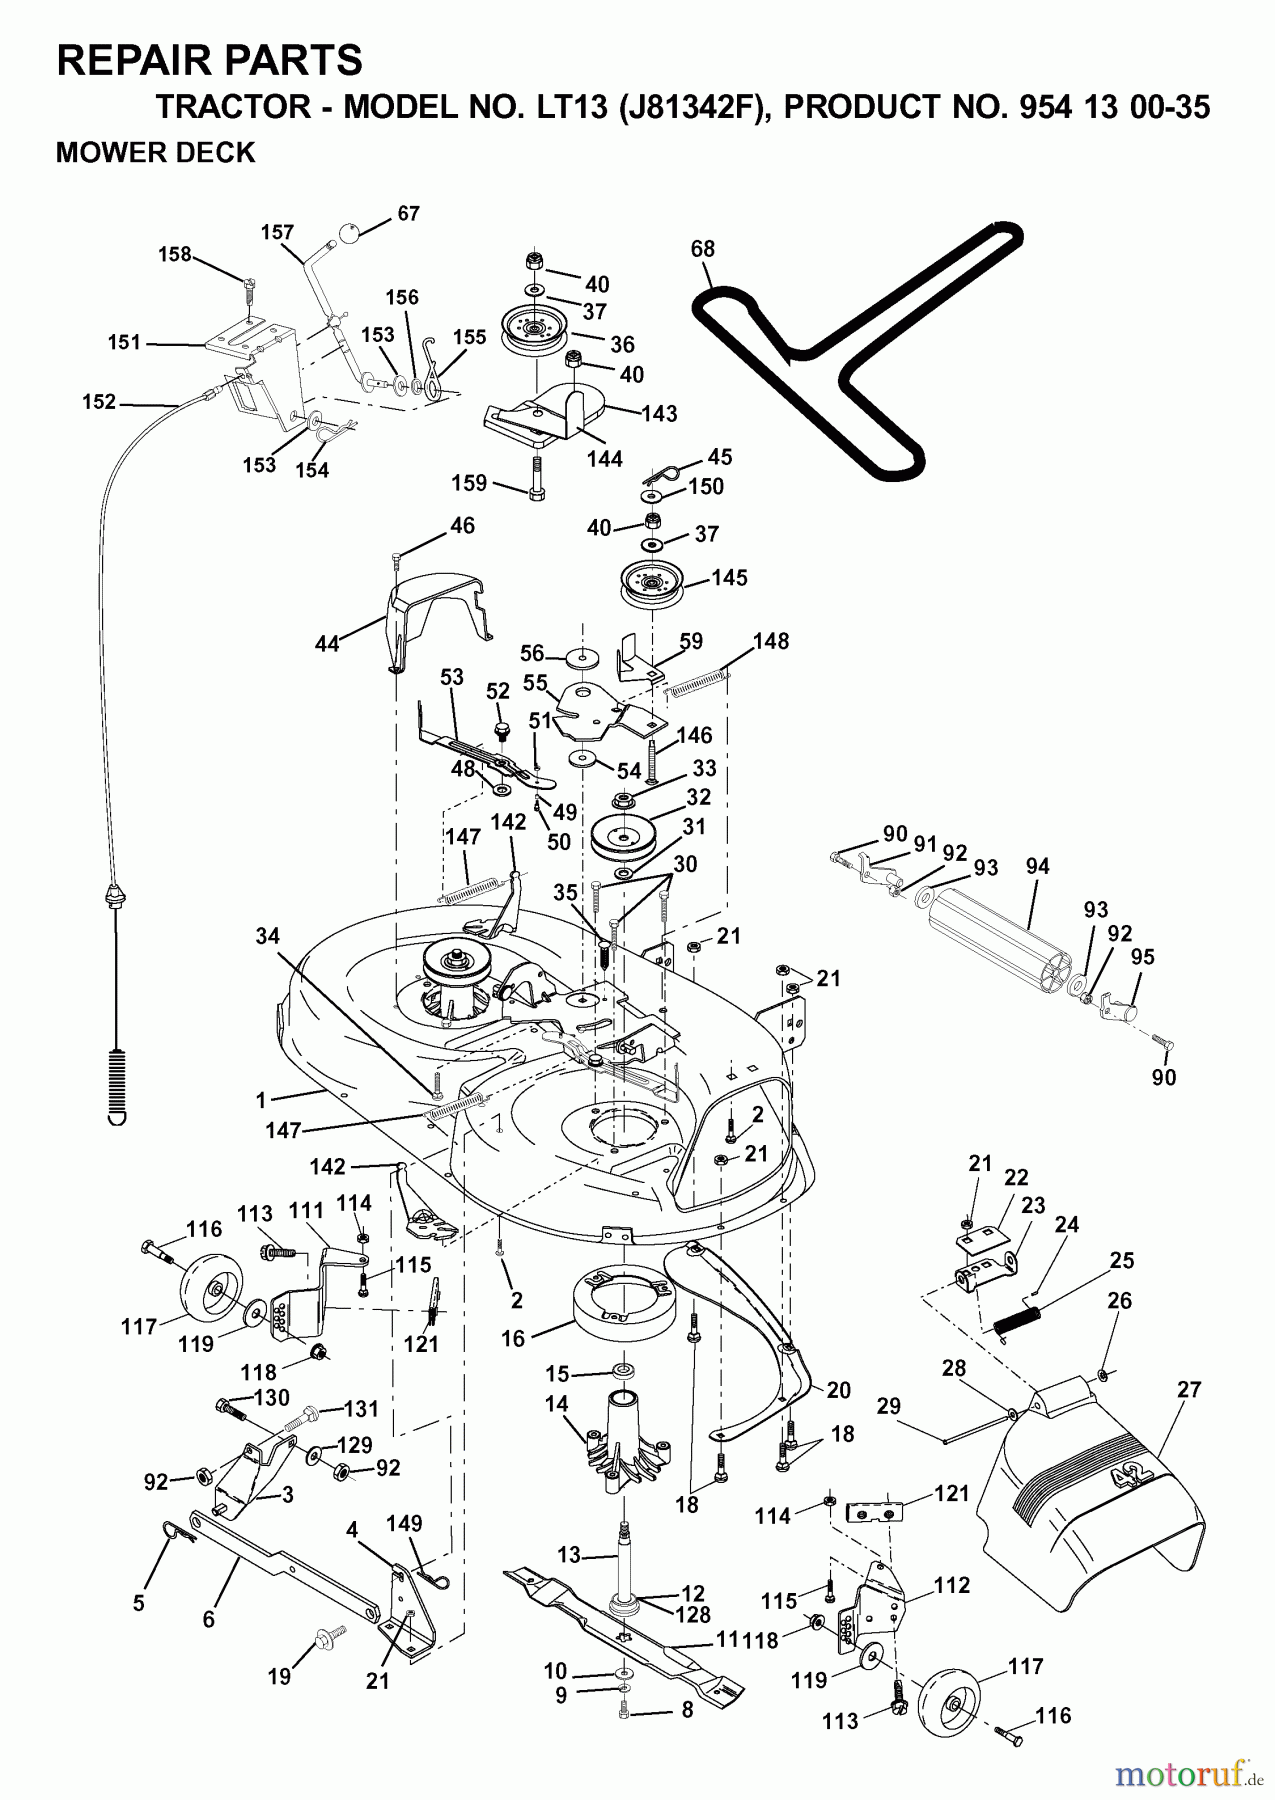  Jonsered Rasen  und Garten Traktoren LT13 (J81342F, 954130035) - Jonsered Lawn & Garden Tractor (2000-04) MOWER DECK / CUTTING DECK